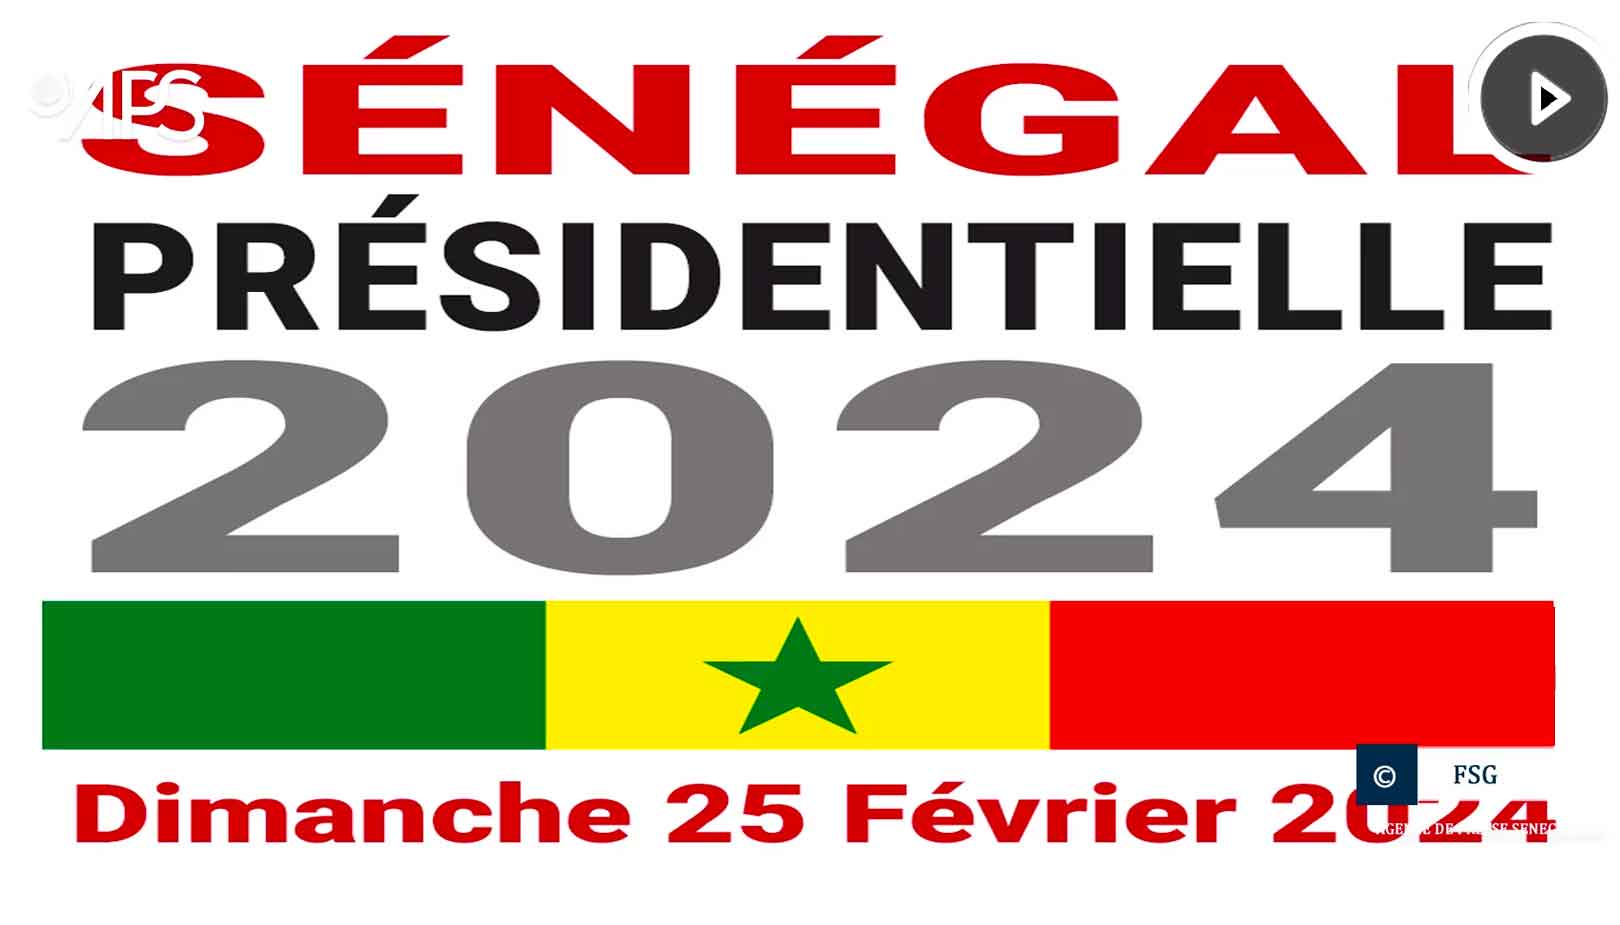 SENEGALPOLITIQUE / Présidentielle 2024 six femmes parmi les 93